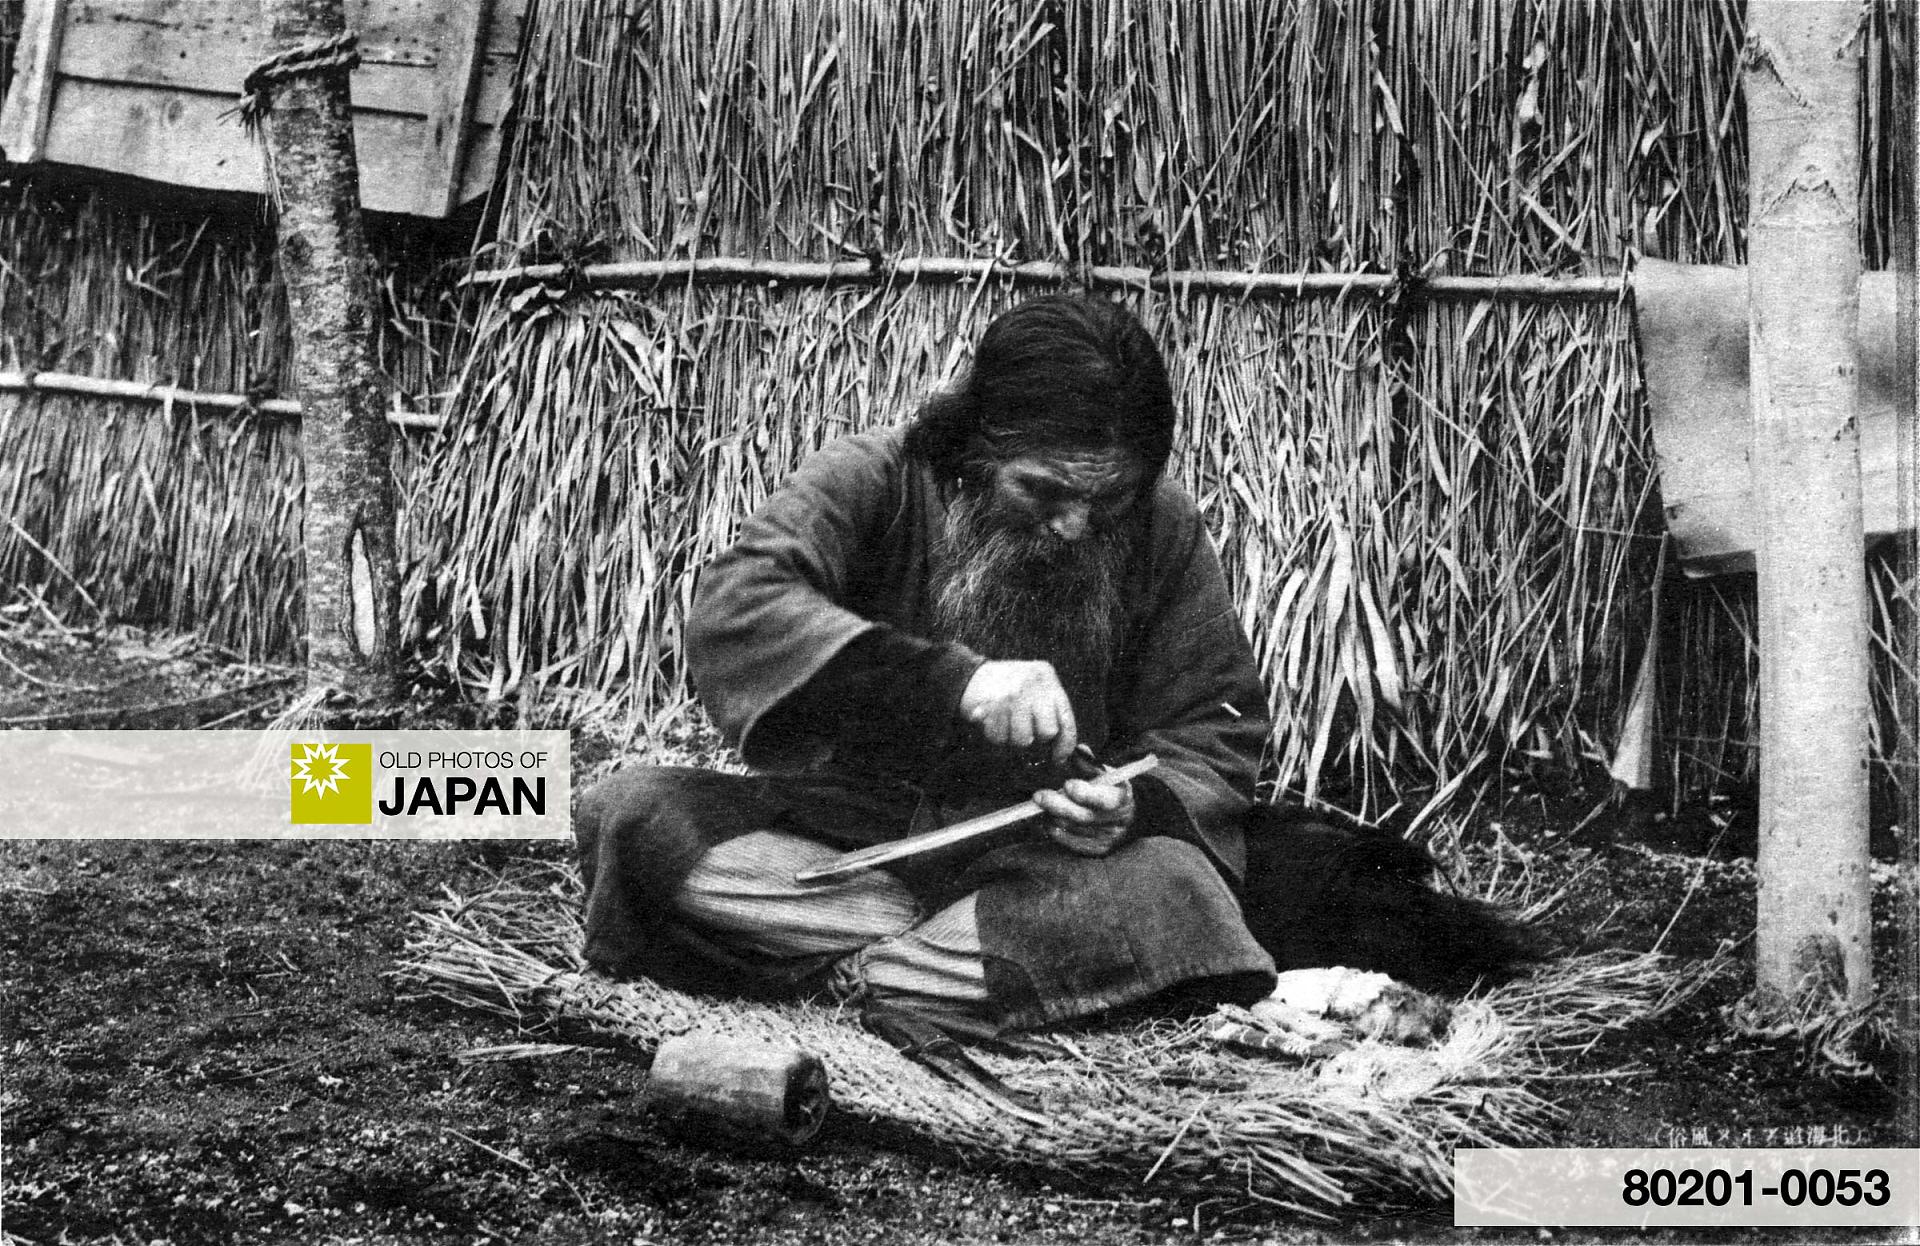 80201-0053 -  An Ainu man carving wood, 1920s